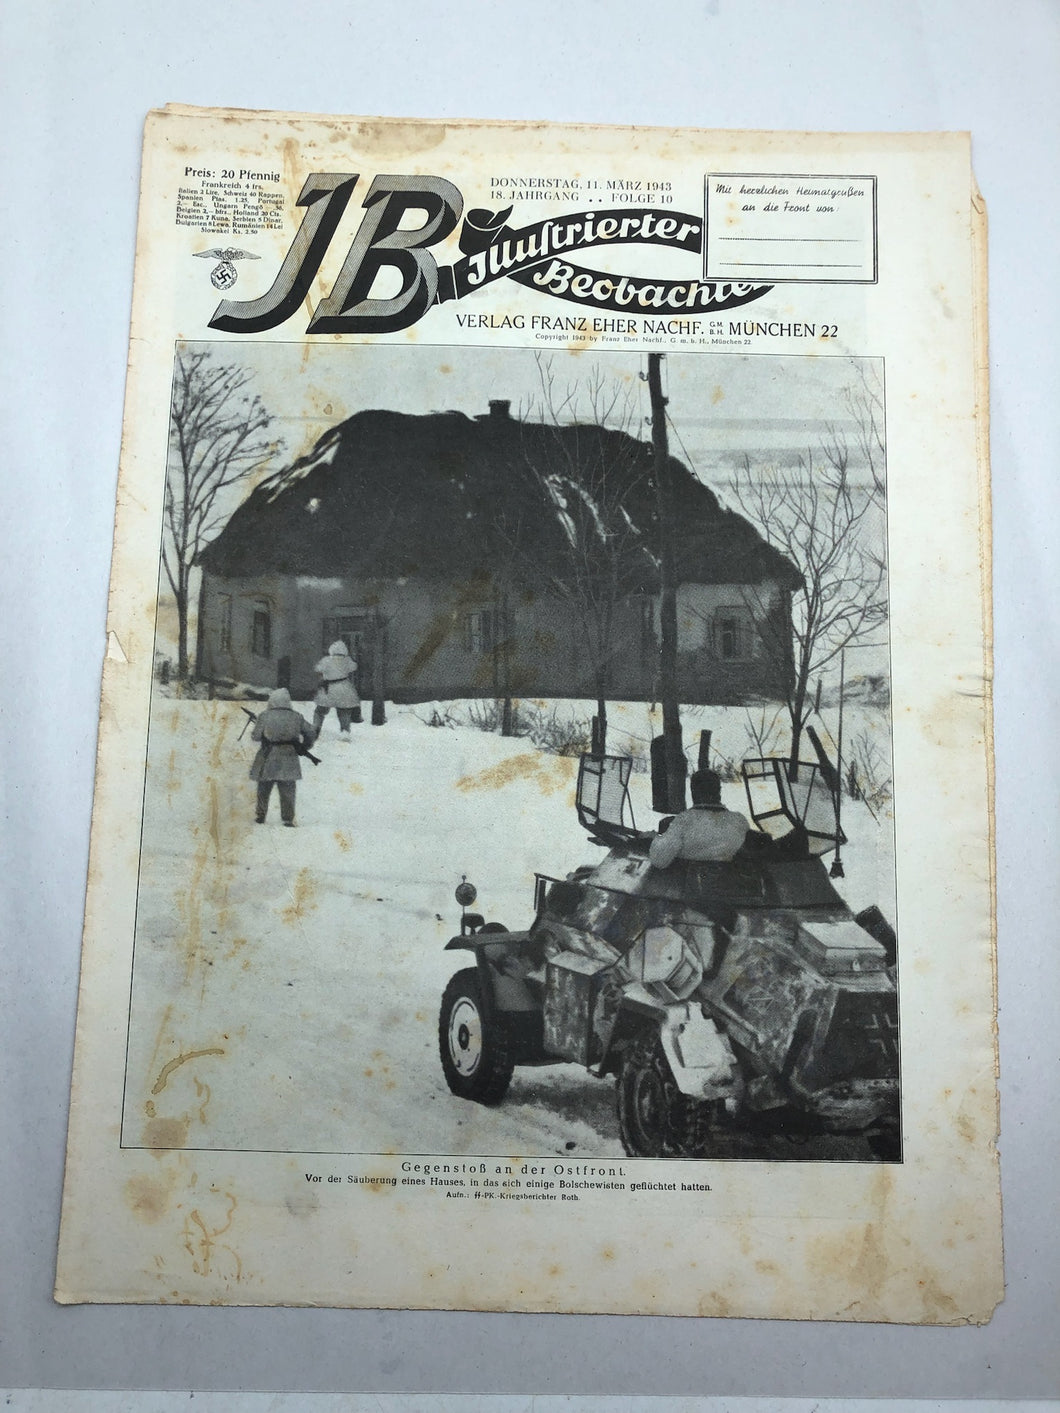 JB Juustrierter Beobachter NSDAP Magazine Original WW2 German - 11 March 1943